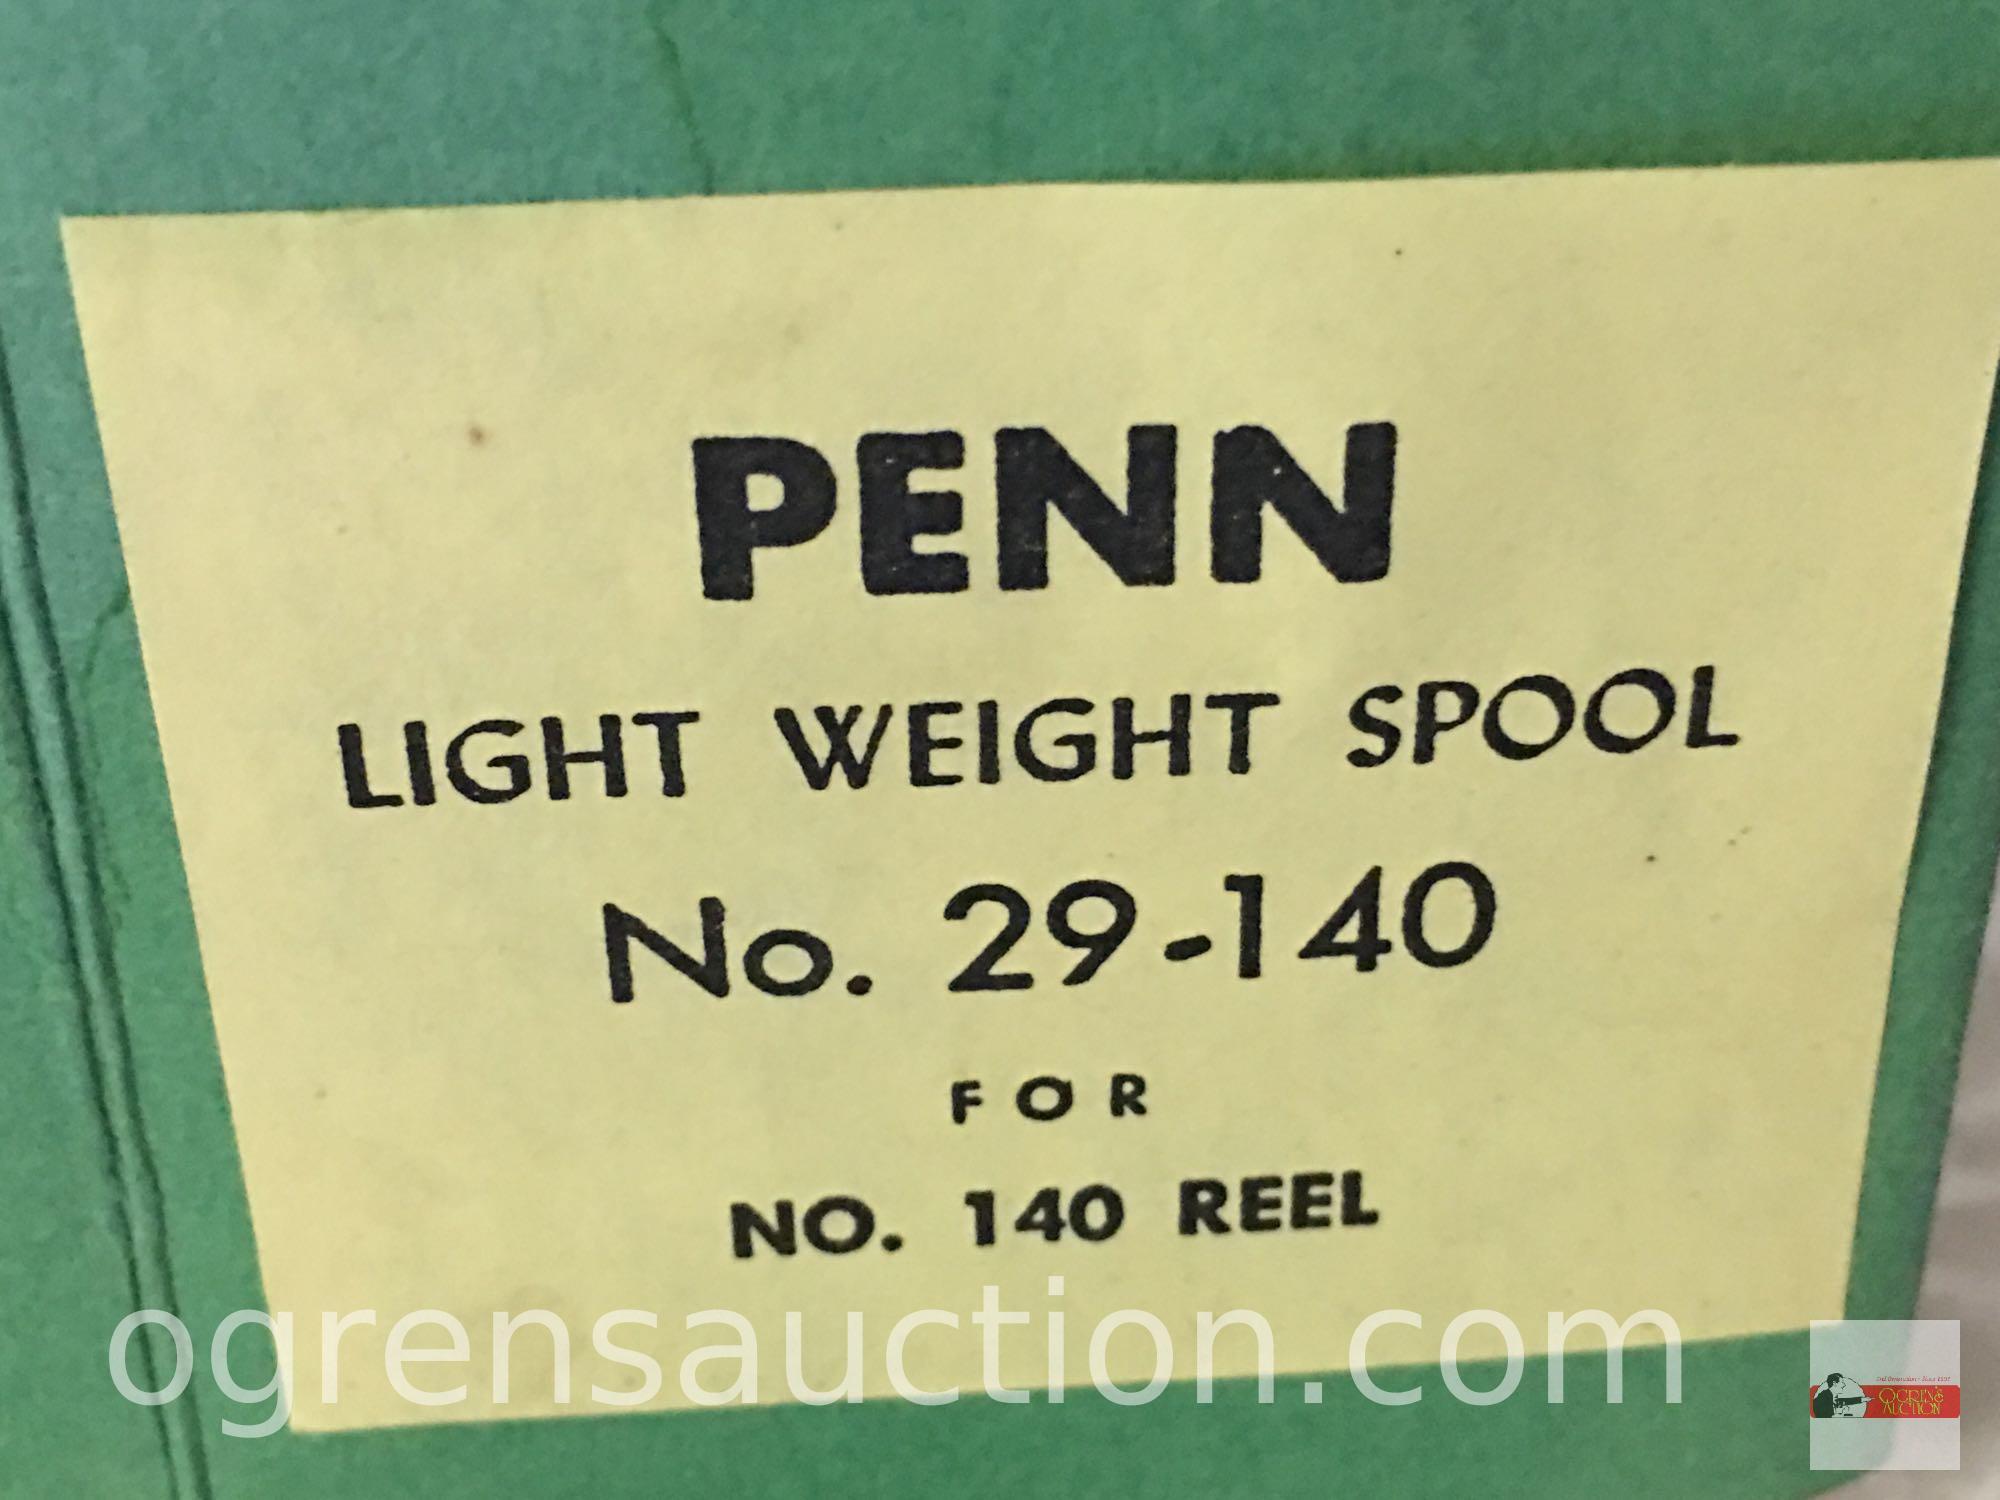 Fishing - Spool - Penn Lightweight Bakelite Spool #29-140 for 140 Reel, new old stock in box